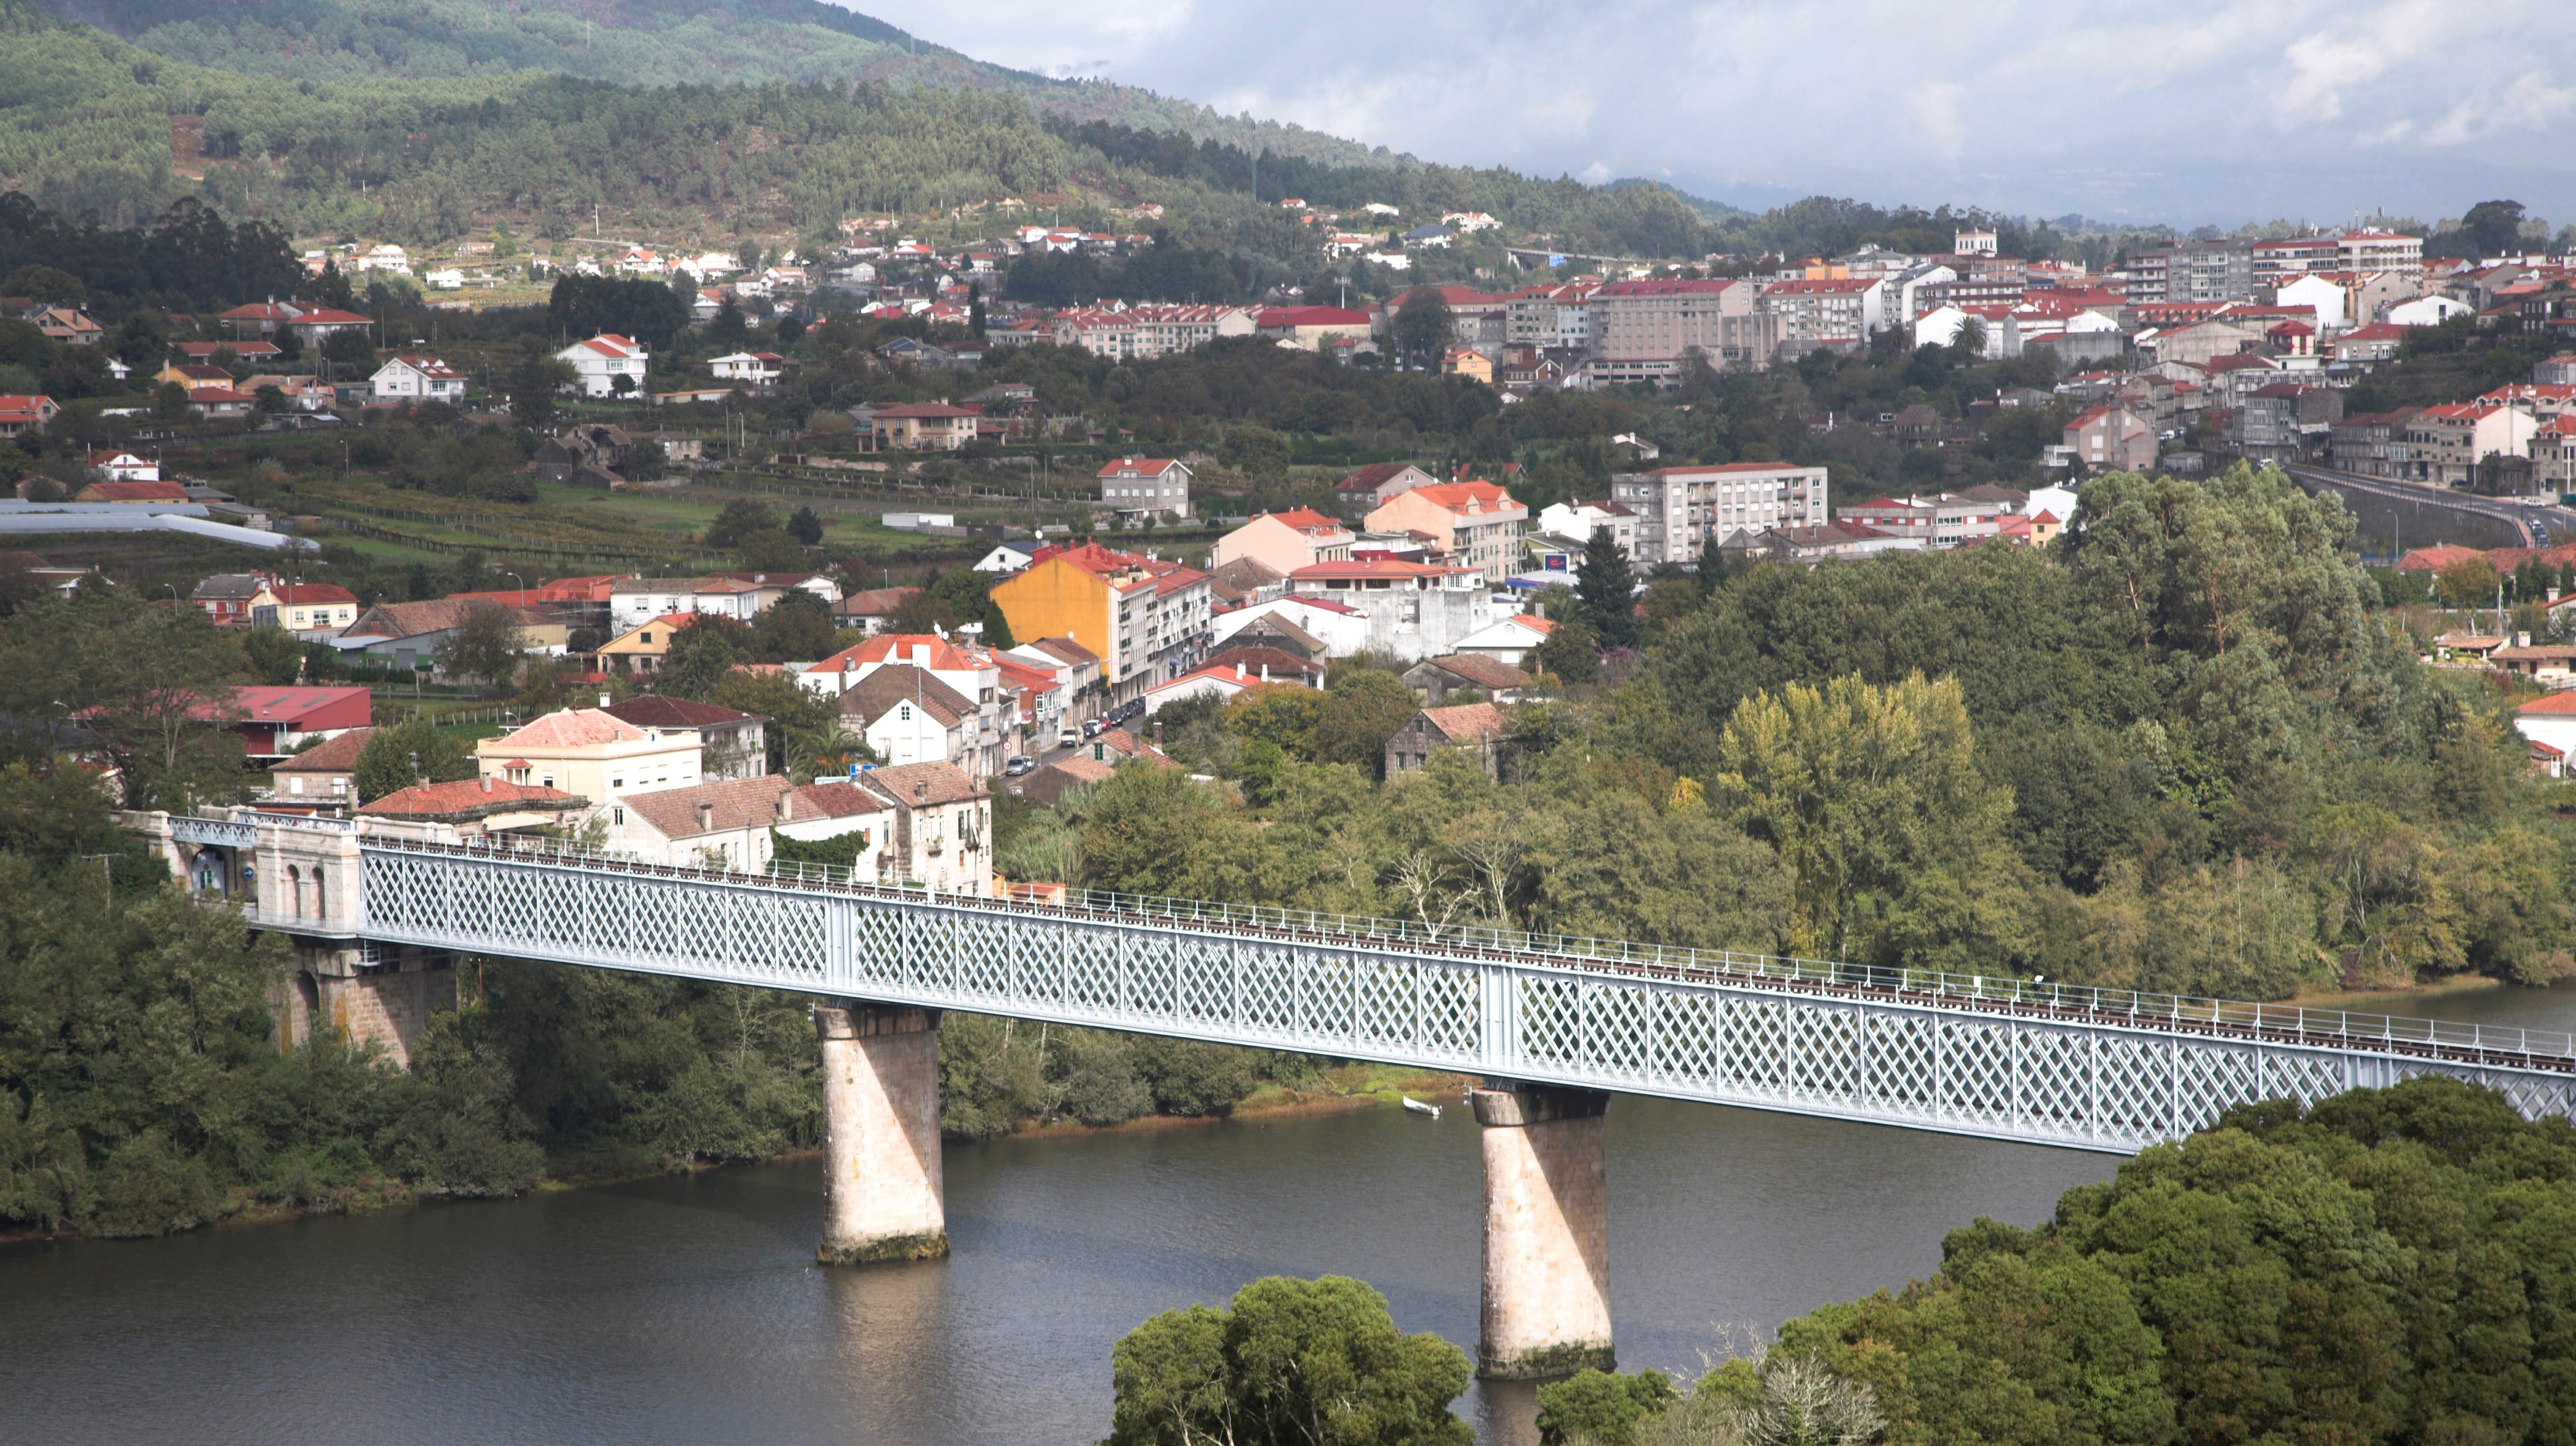 River Minho, Tui, Spain from Valenca do Minho, Portugal